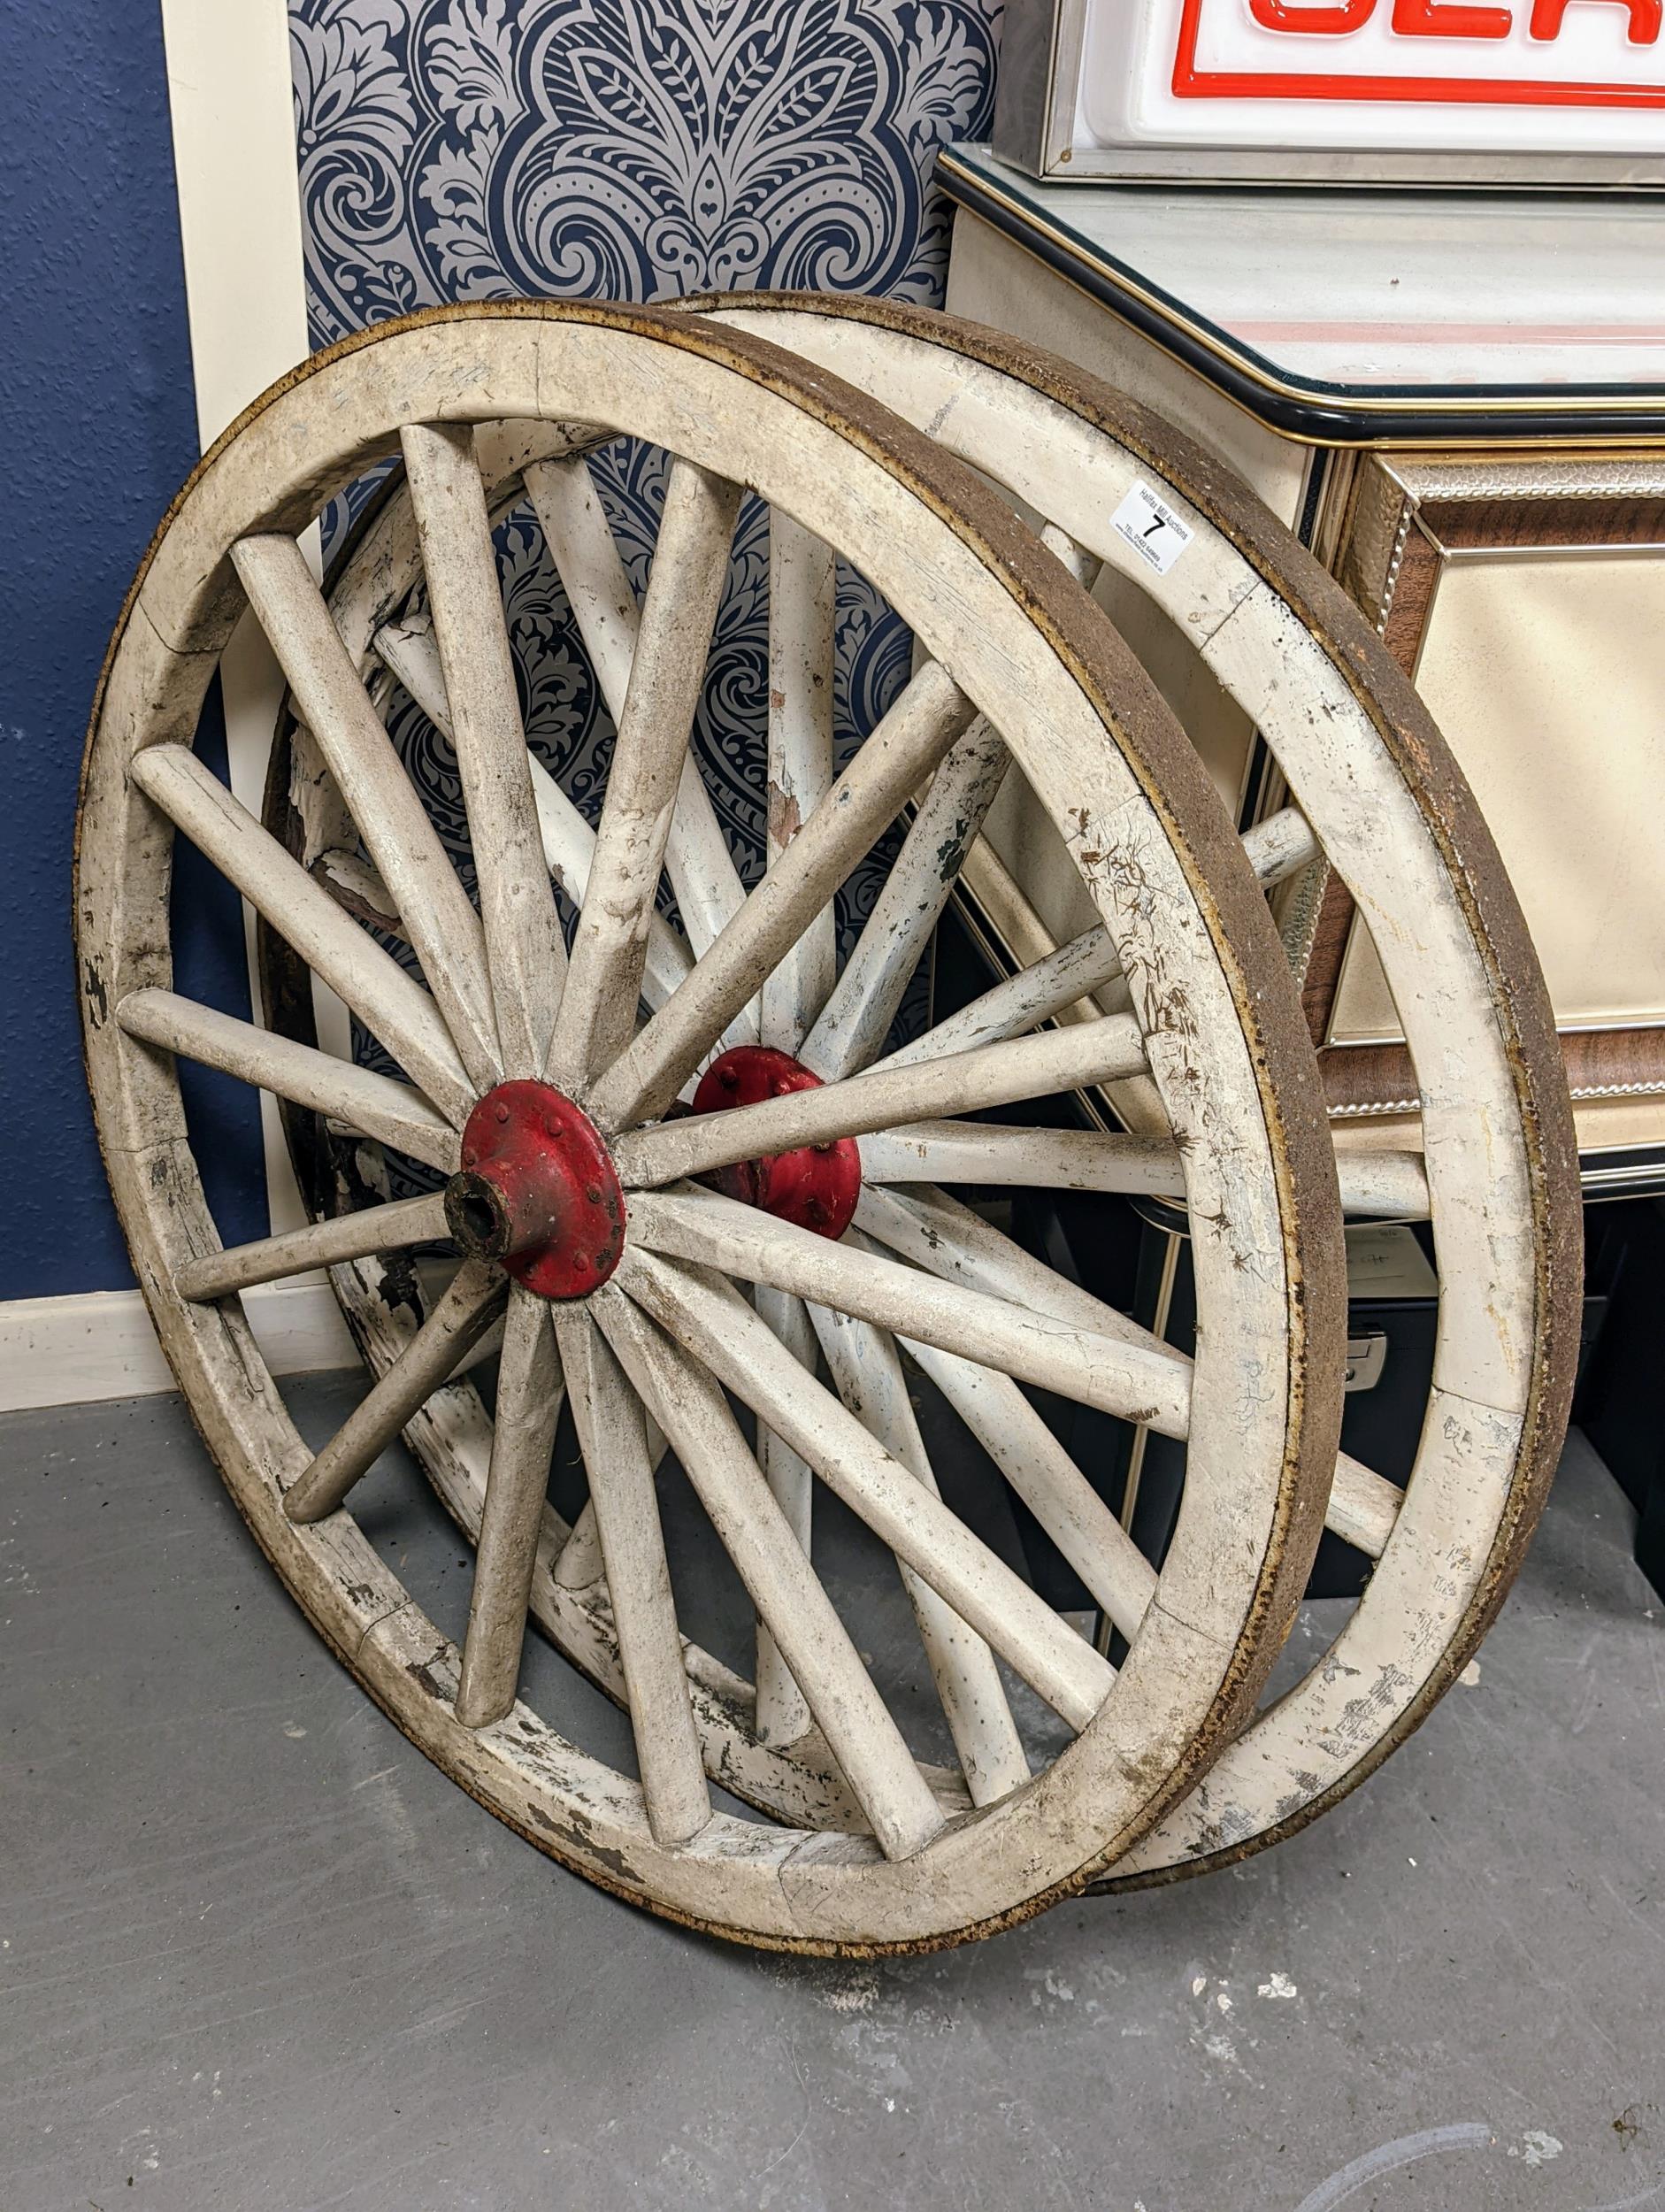 Pair of Retro Horse & Cart Carriage Cartwheels - 94cm diameter